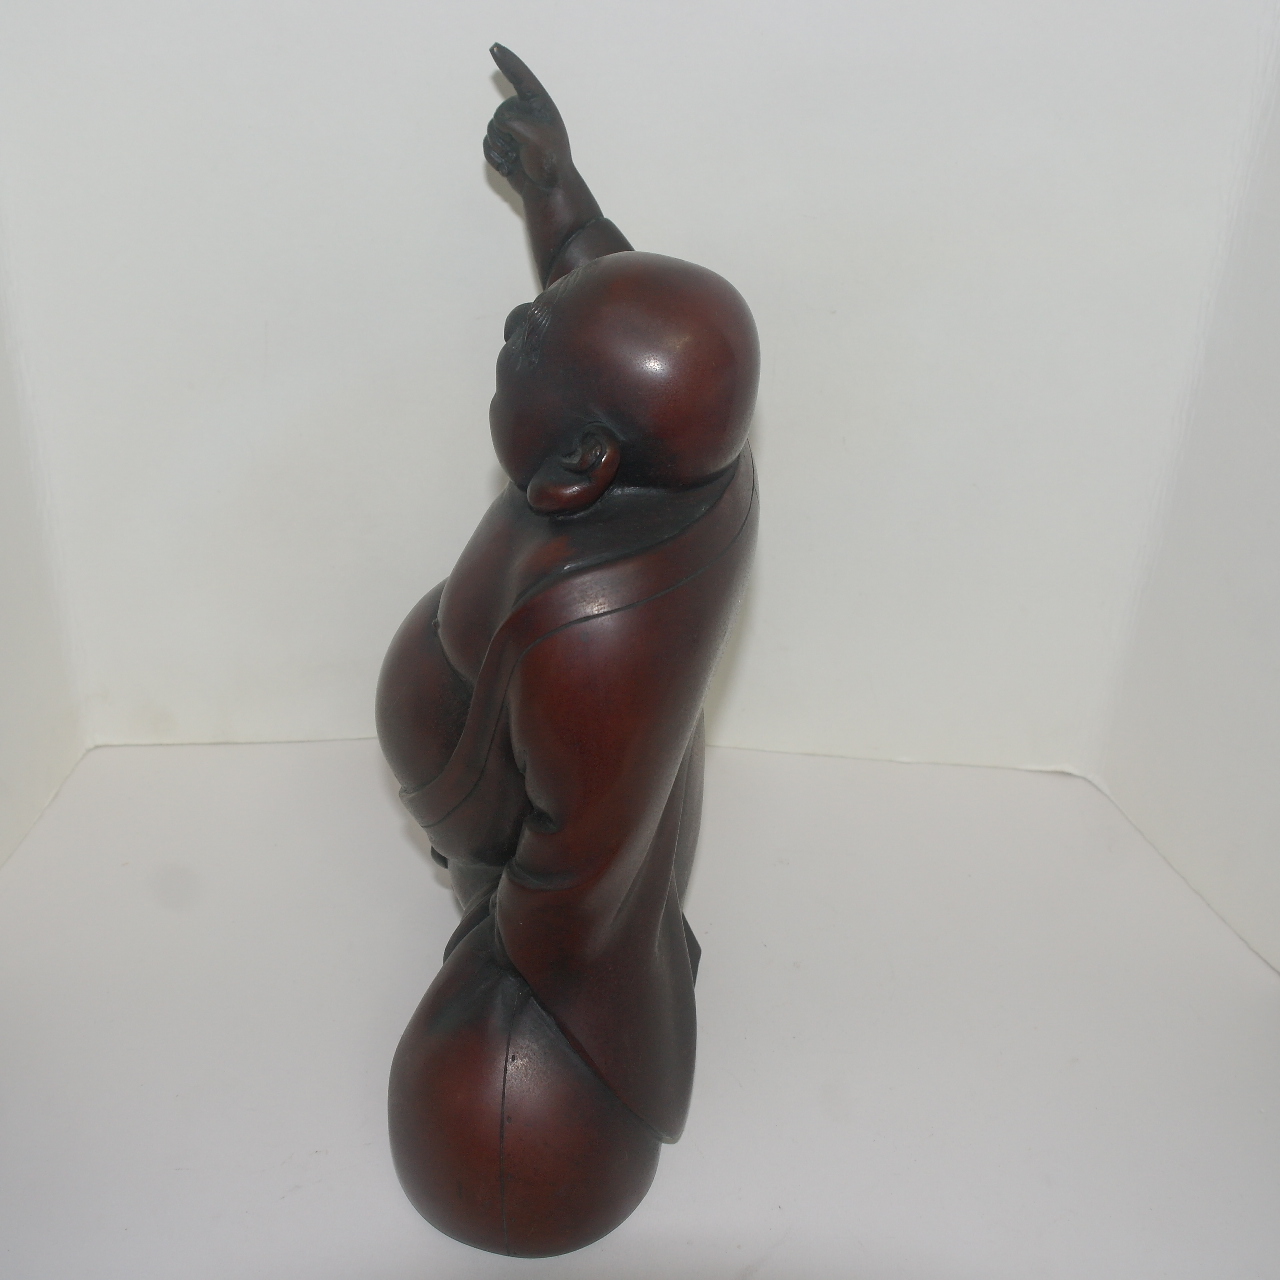 청동브론즈 작가수결이 있는 포대화상 조각상